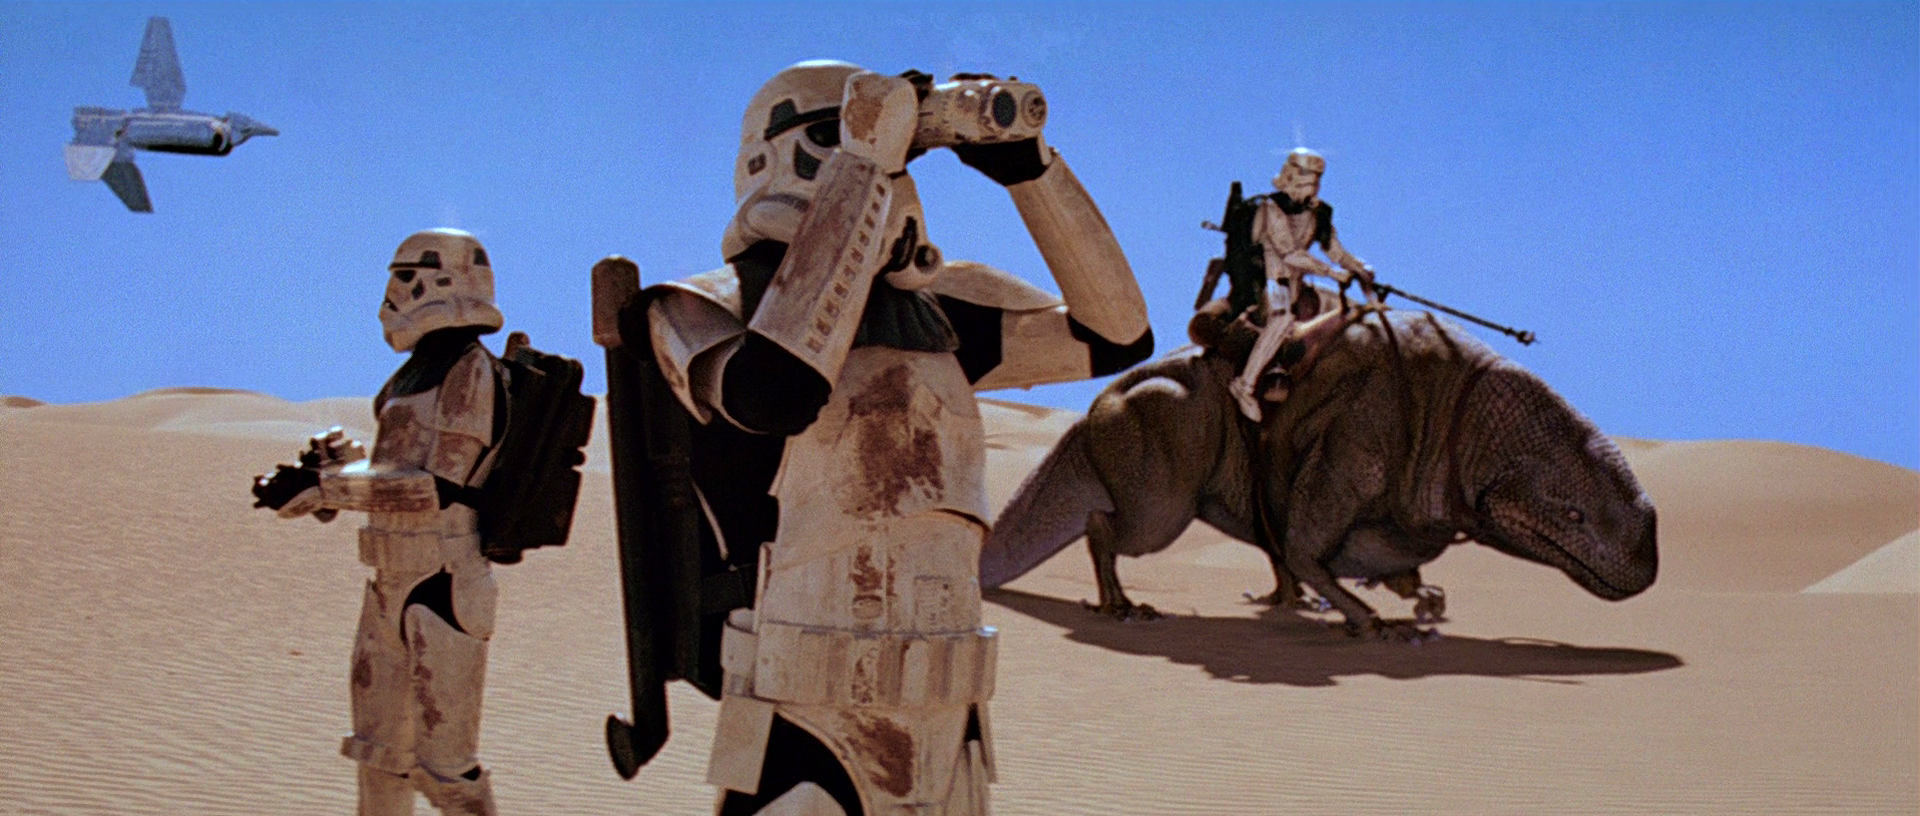 CGI Dewbacks in Star Wars: A New Hope